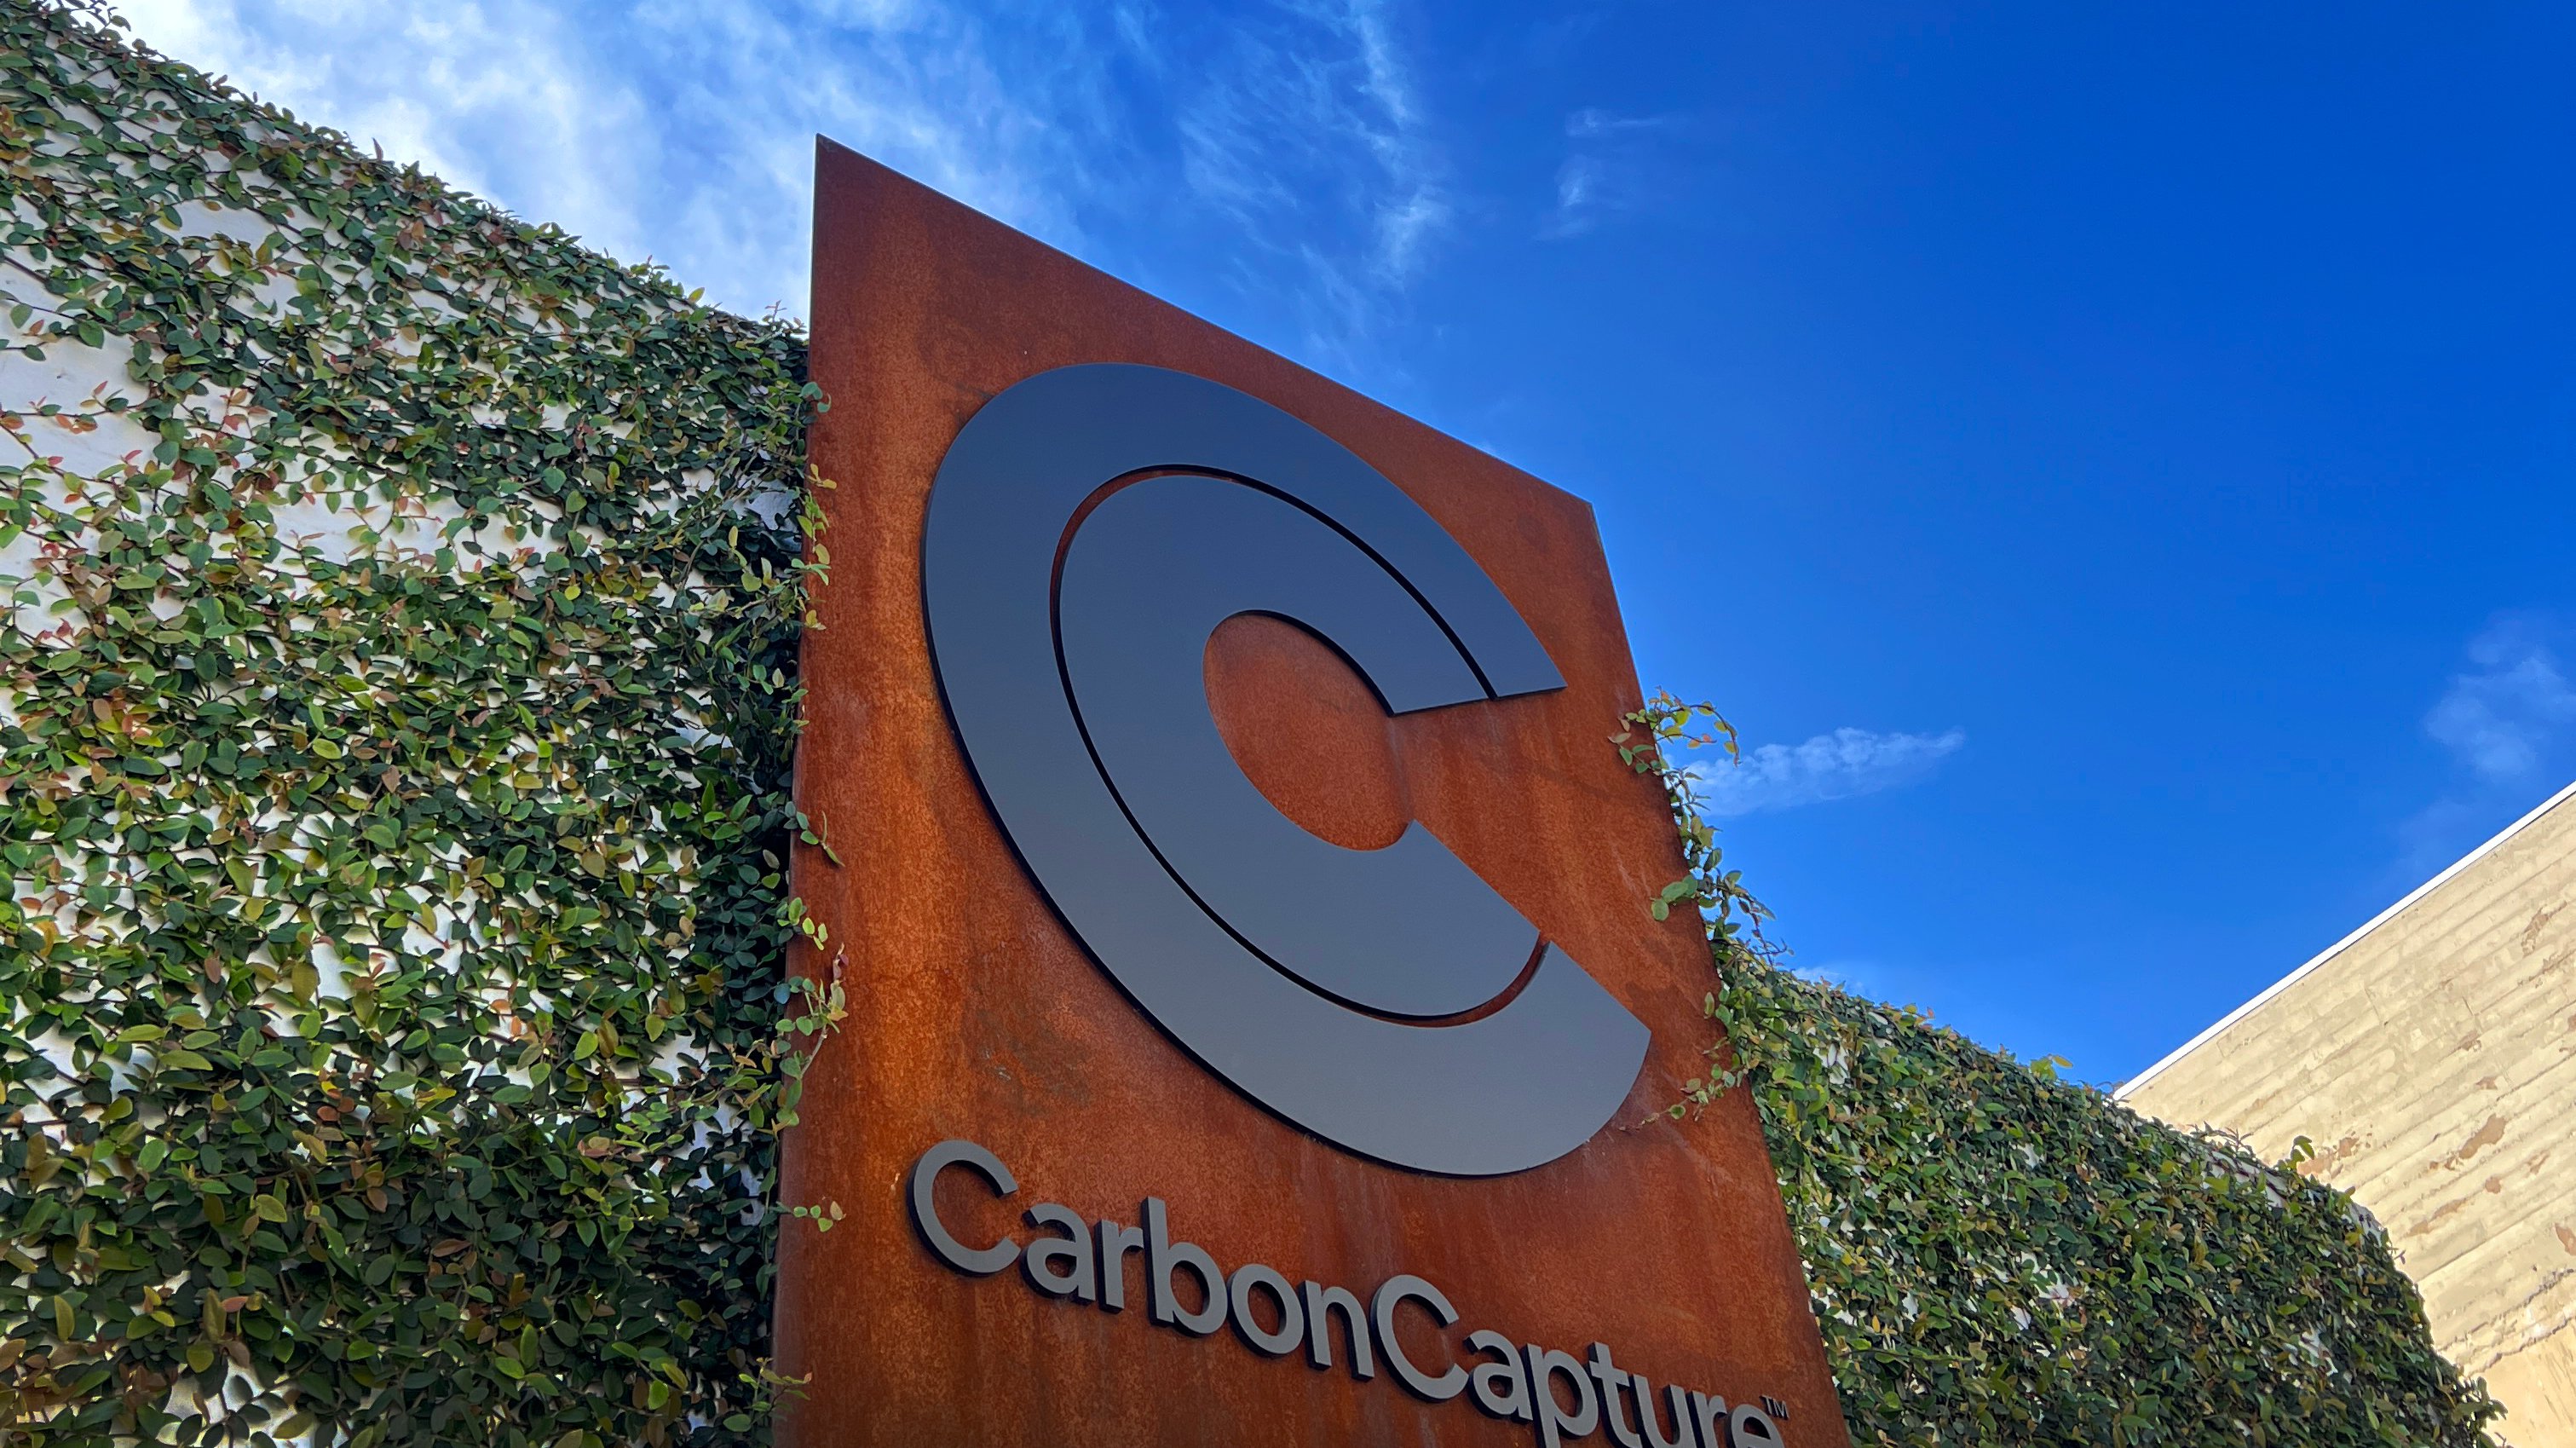 CarbonCapture closes $80 million Series A financing